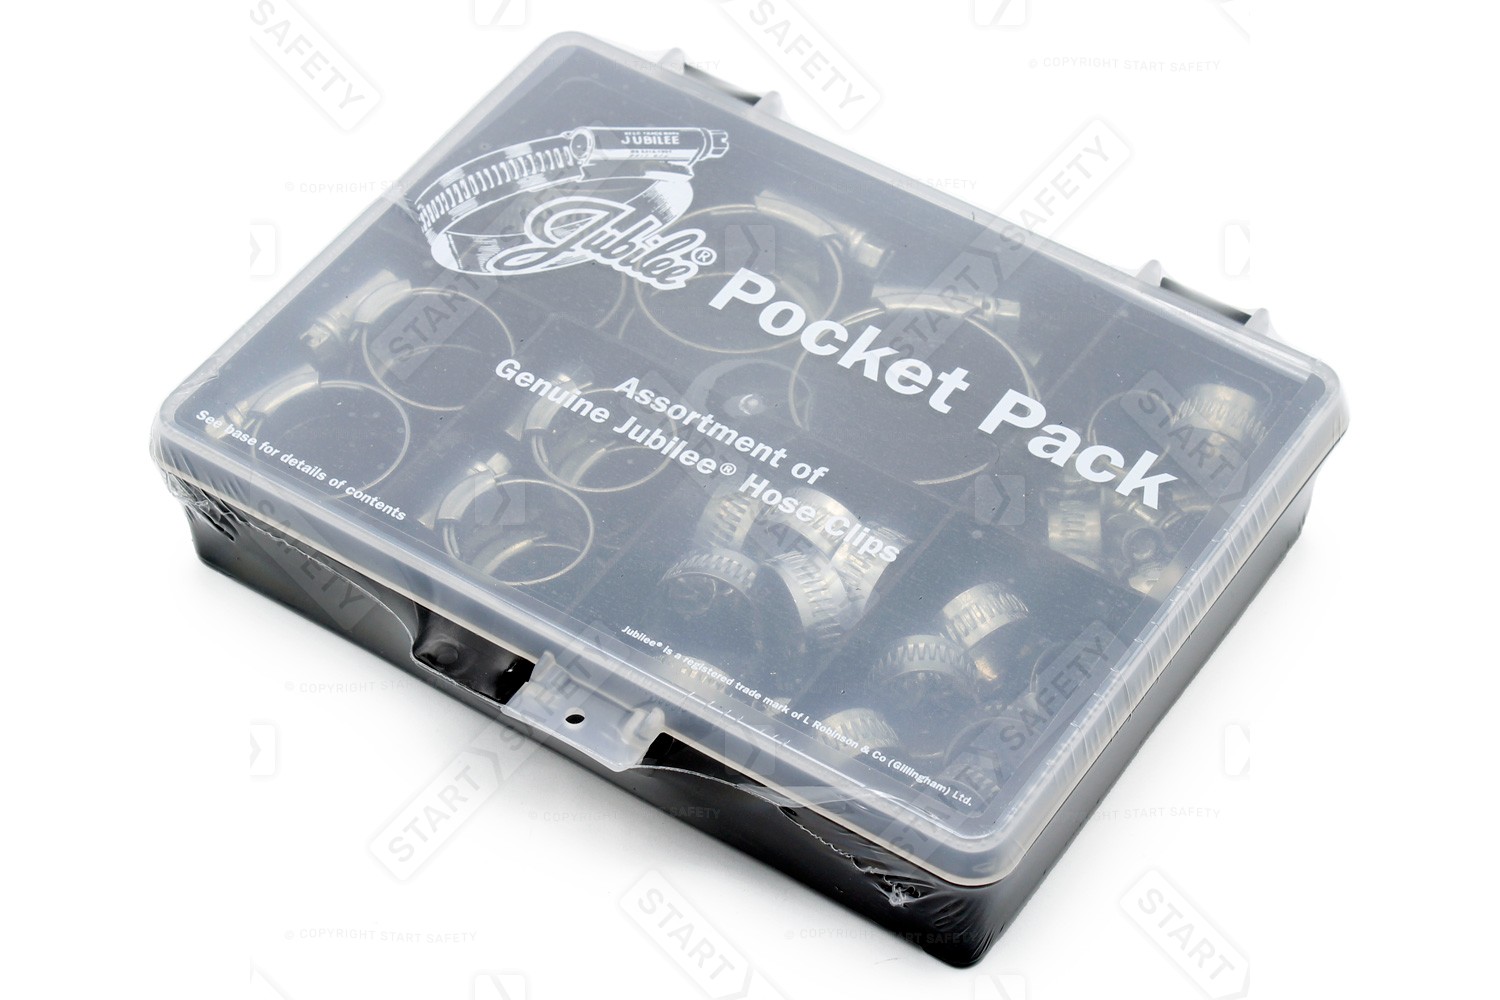 Pocket pack